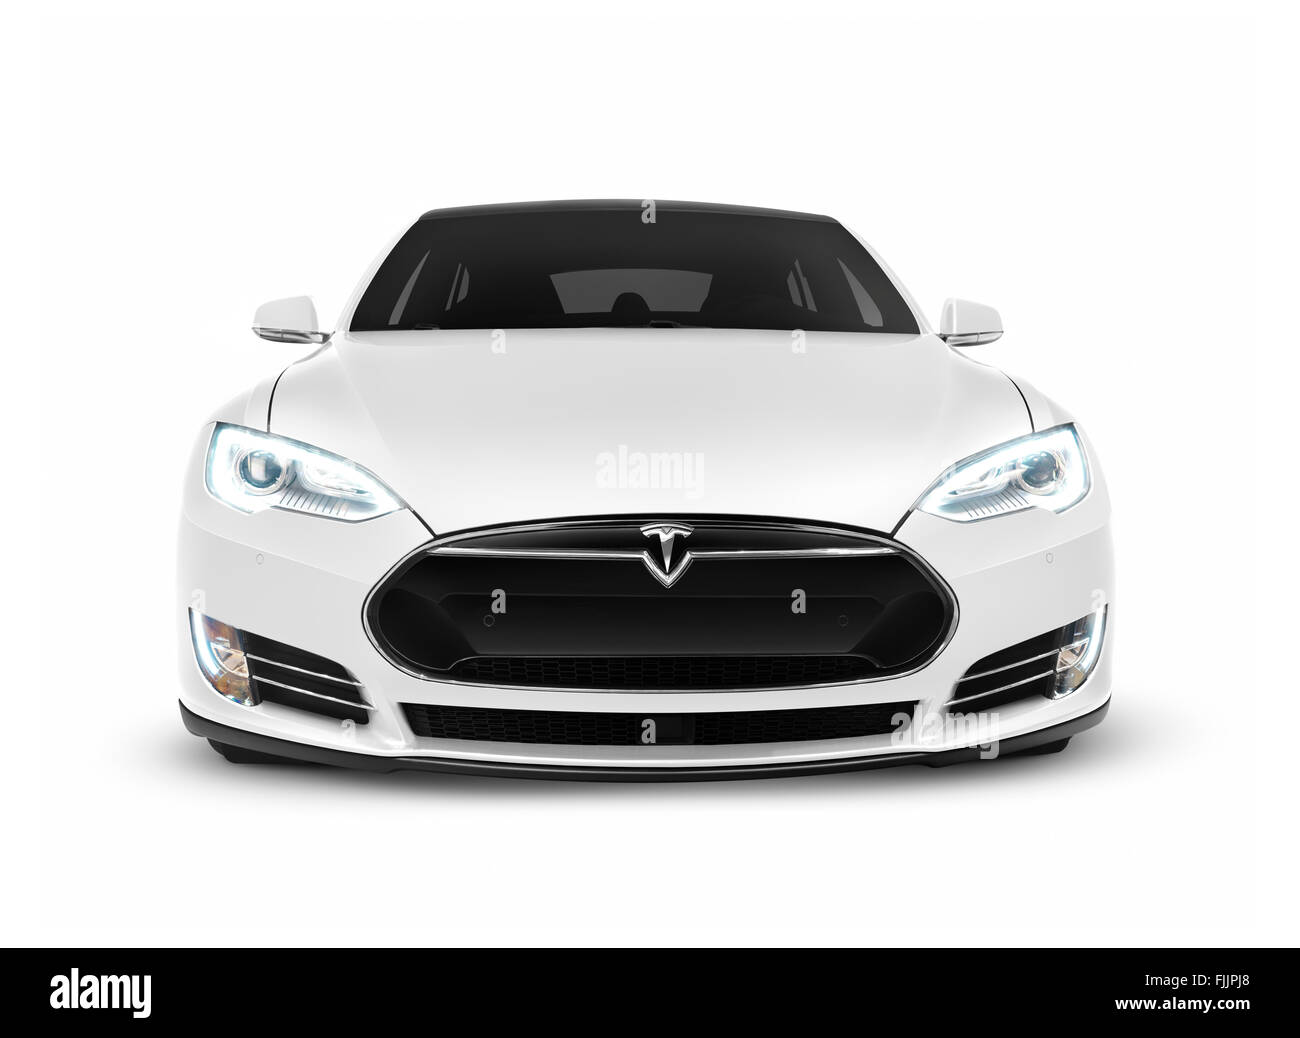 Führerschein und Ausdrucke bei MaximImages.com–2017 Tesla Model S Luxus-Elektrofahrzeug, Vorderansicht isoliert auf weißem Hintergrund mit Beschneidungspfad Stockfoto